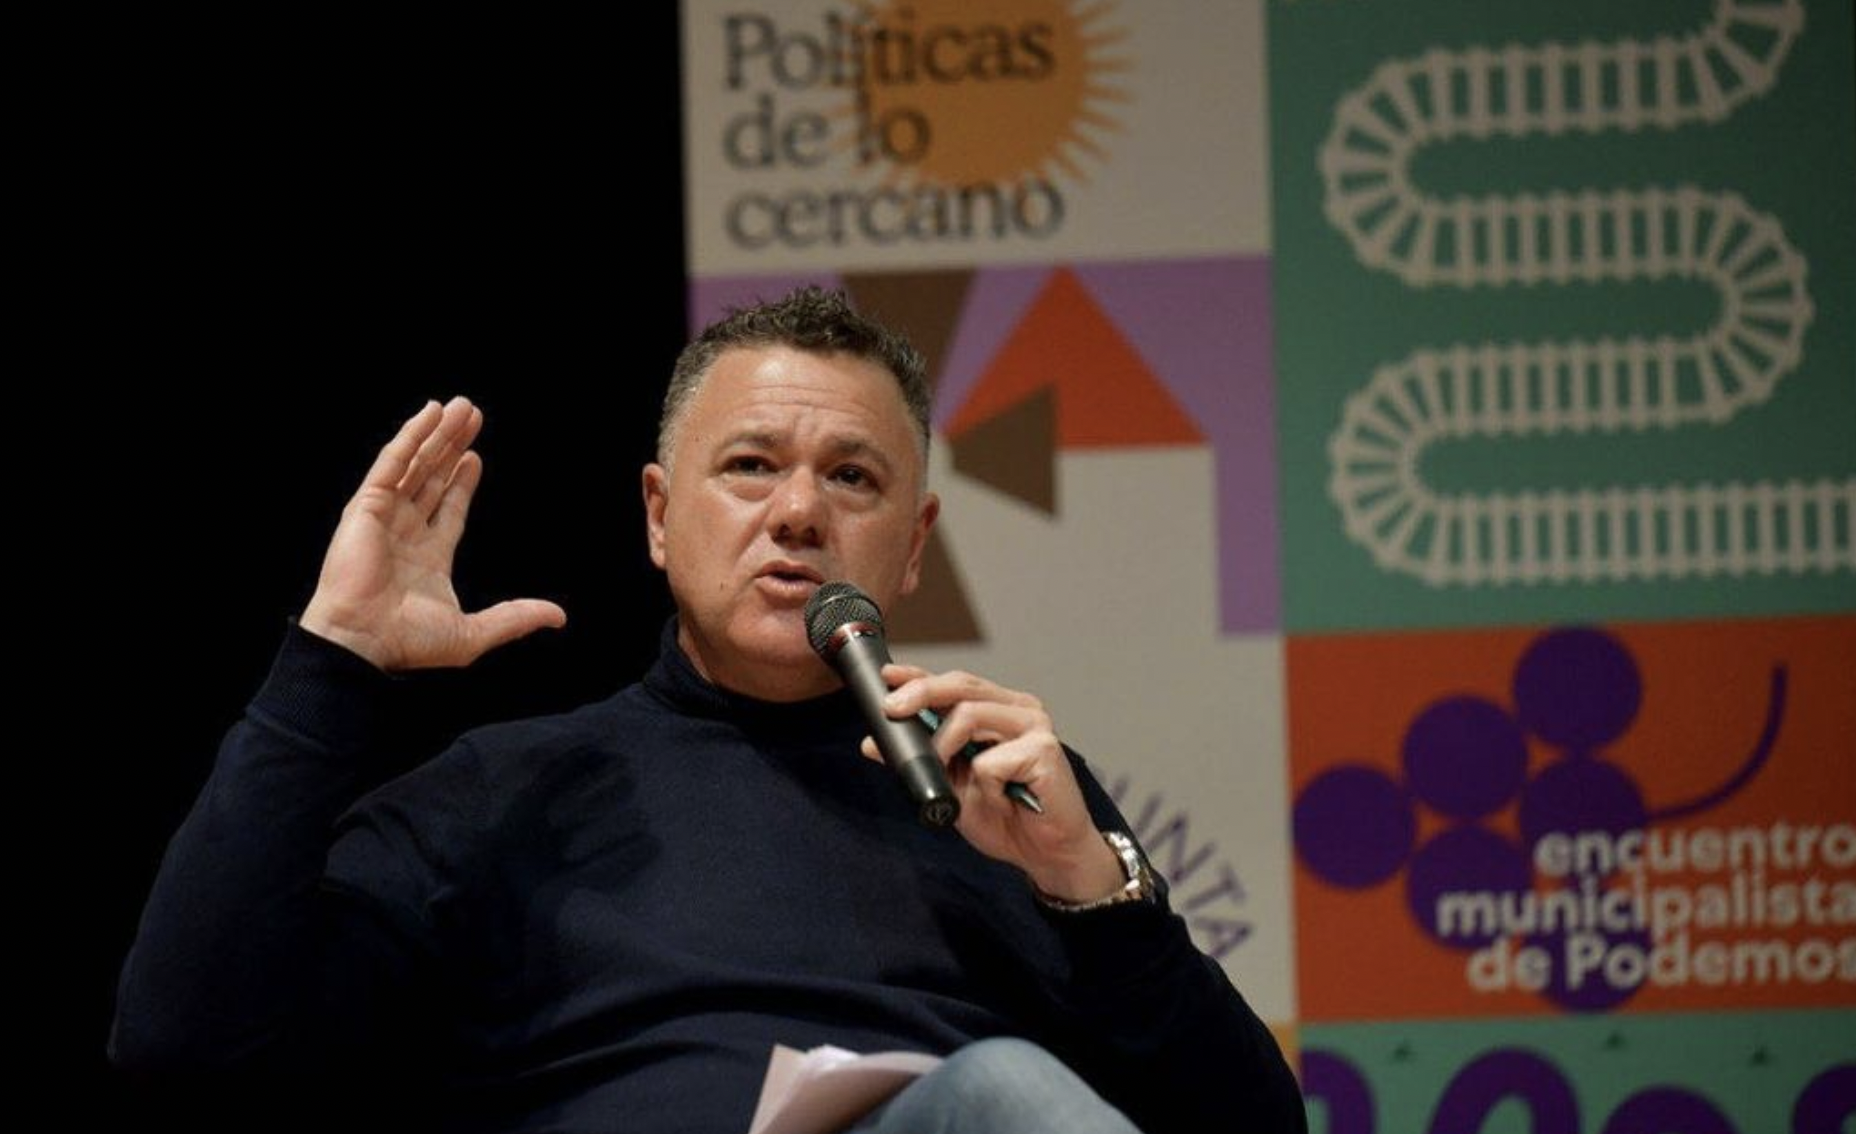 Juan Antonio Delgado, favorito para ser candidato de un posible frente amplio de izquierda en Andalucía. El dirigente de Unidas Podemos, en una imagen reciente.